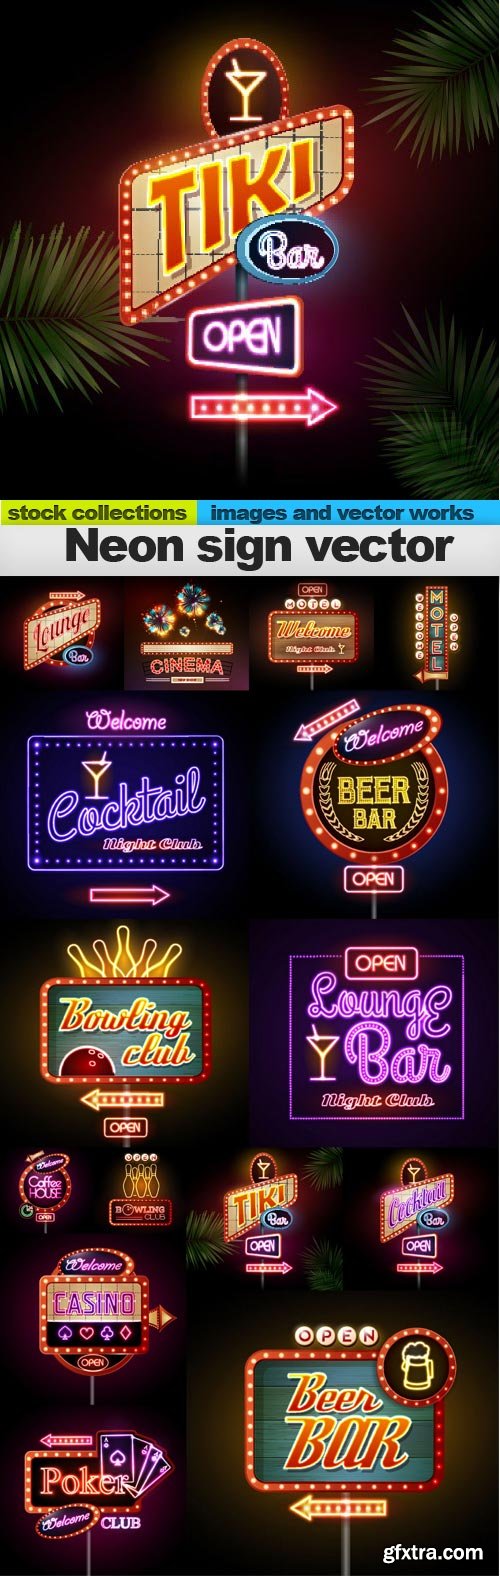 Neon sign vector, 15 x EPS